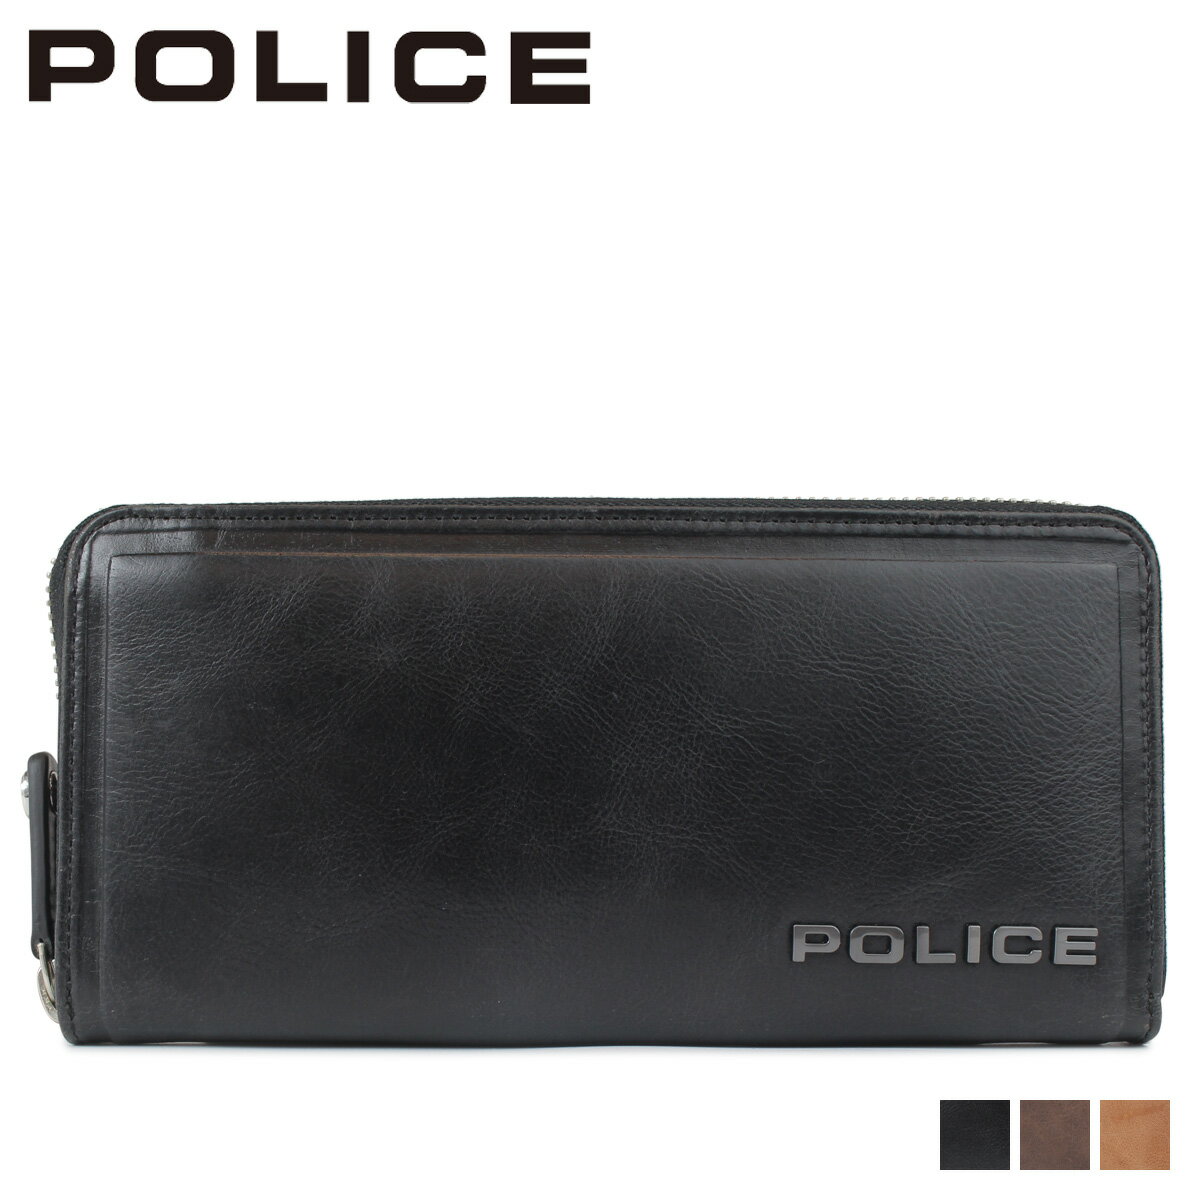 POLICE EDGE ROUND WALLET ポリス 財布 長財布 メンズ ラウンドファスナー レザー ブラック キャメル ダーク ブラウン 黒 PA-58002